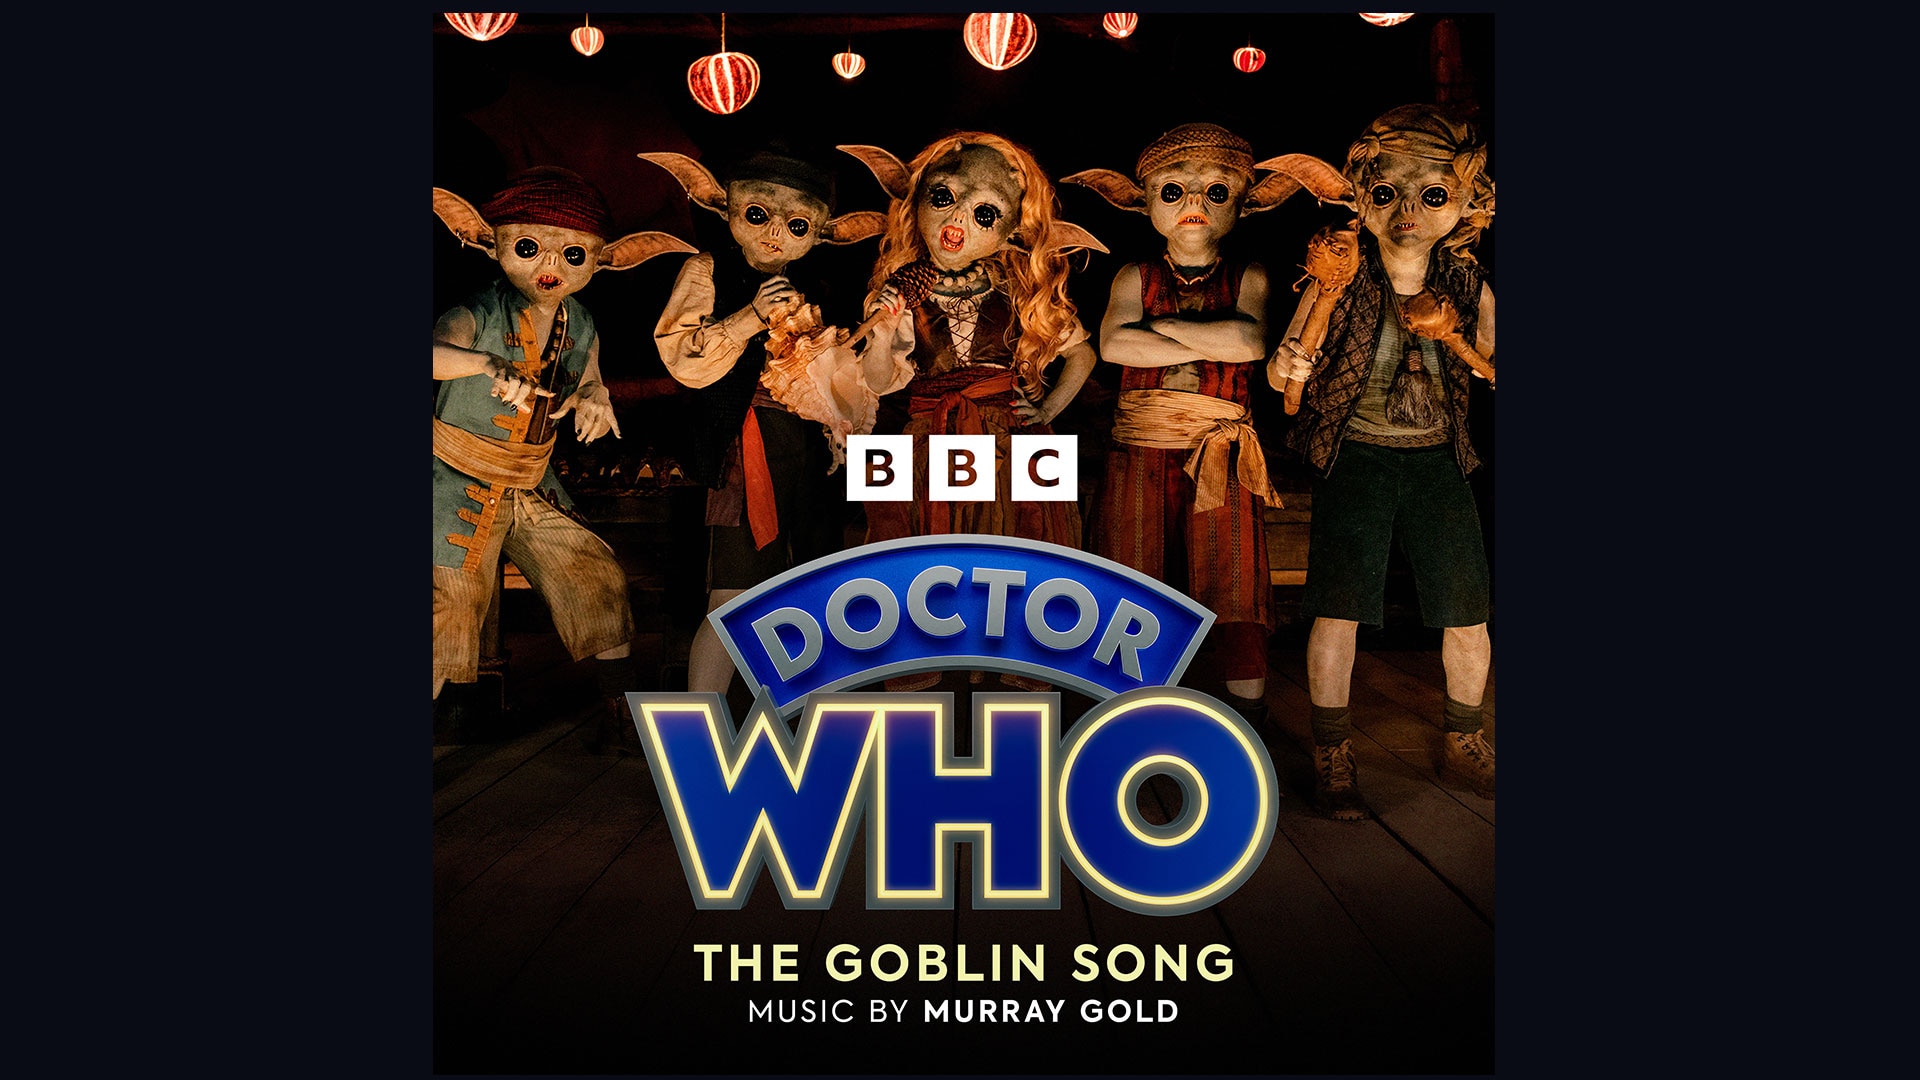 The Goblin Song